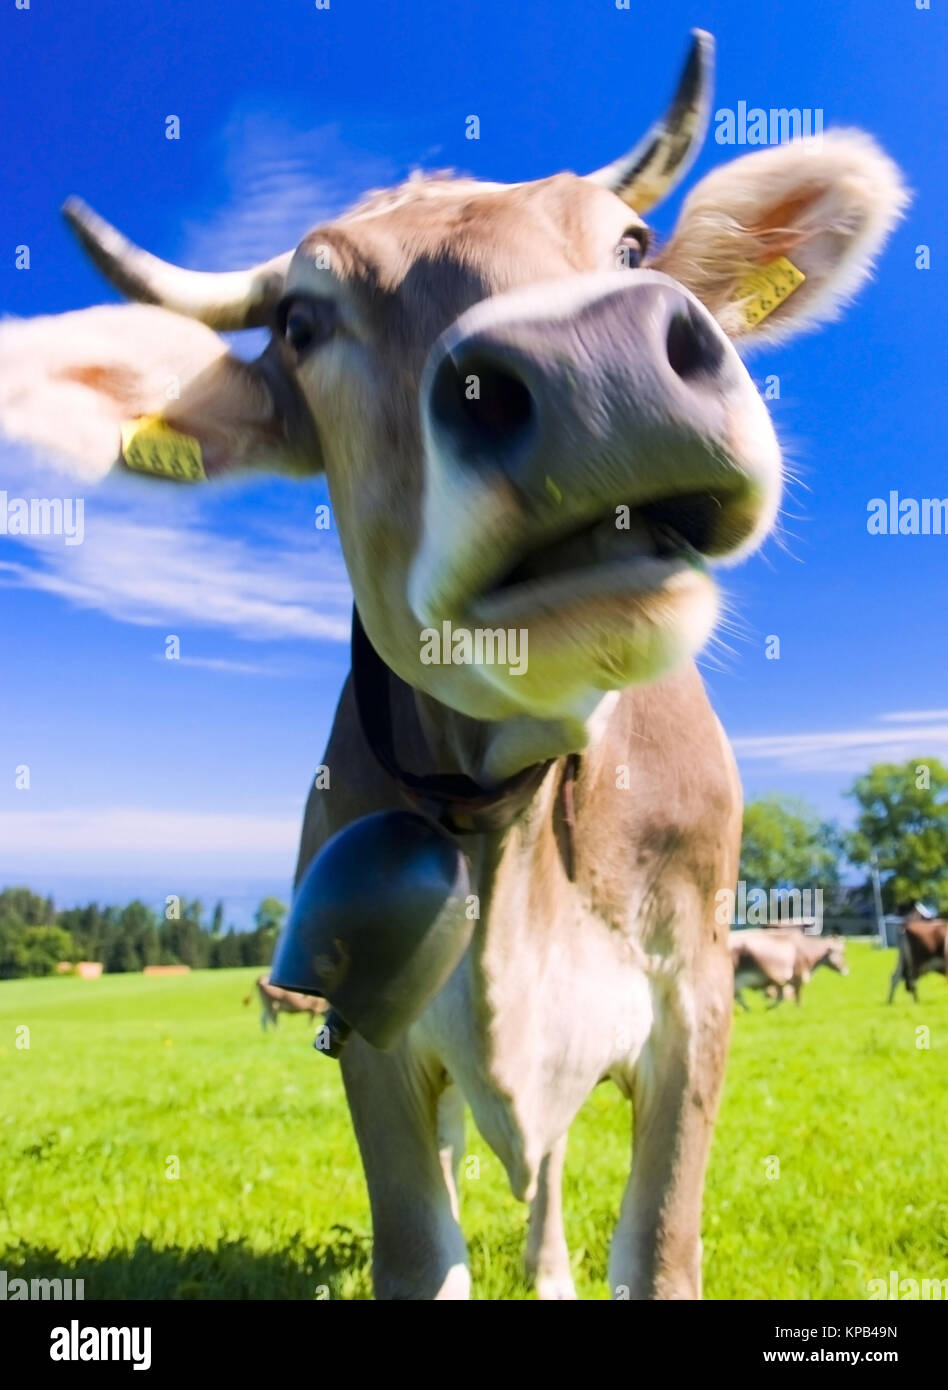 Kuh auf der Alm - cow on alp Stock Photo